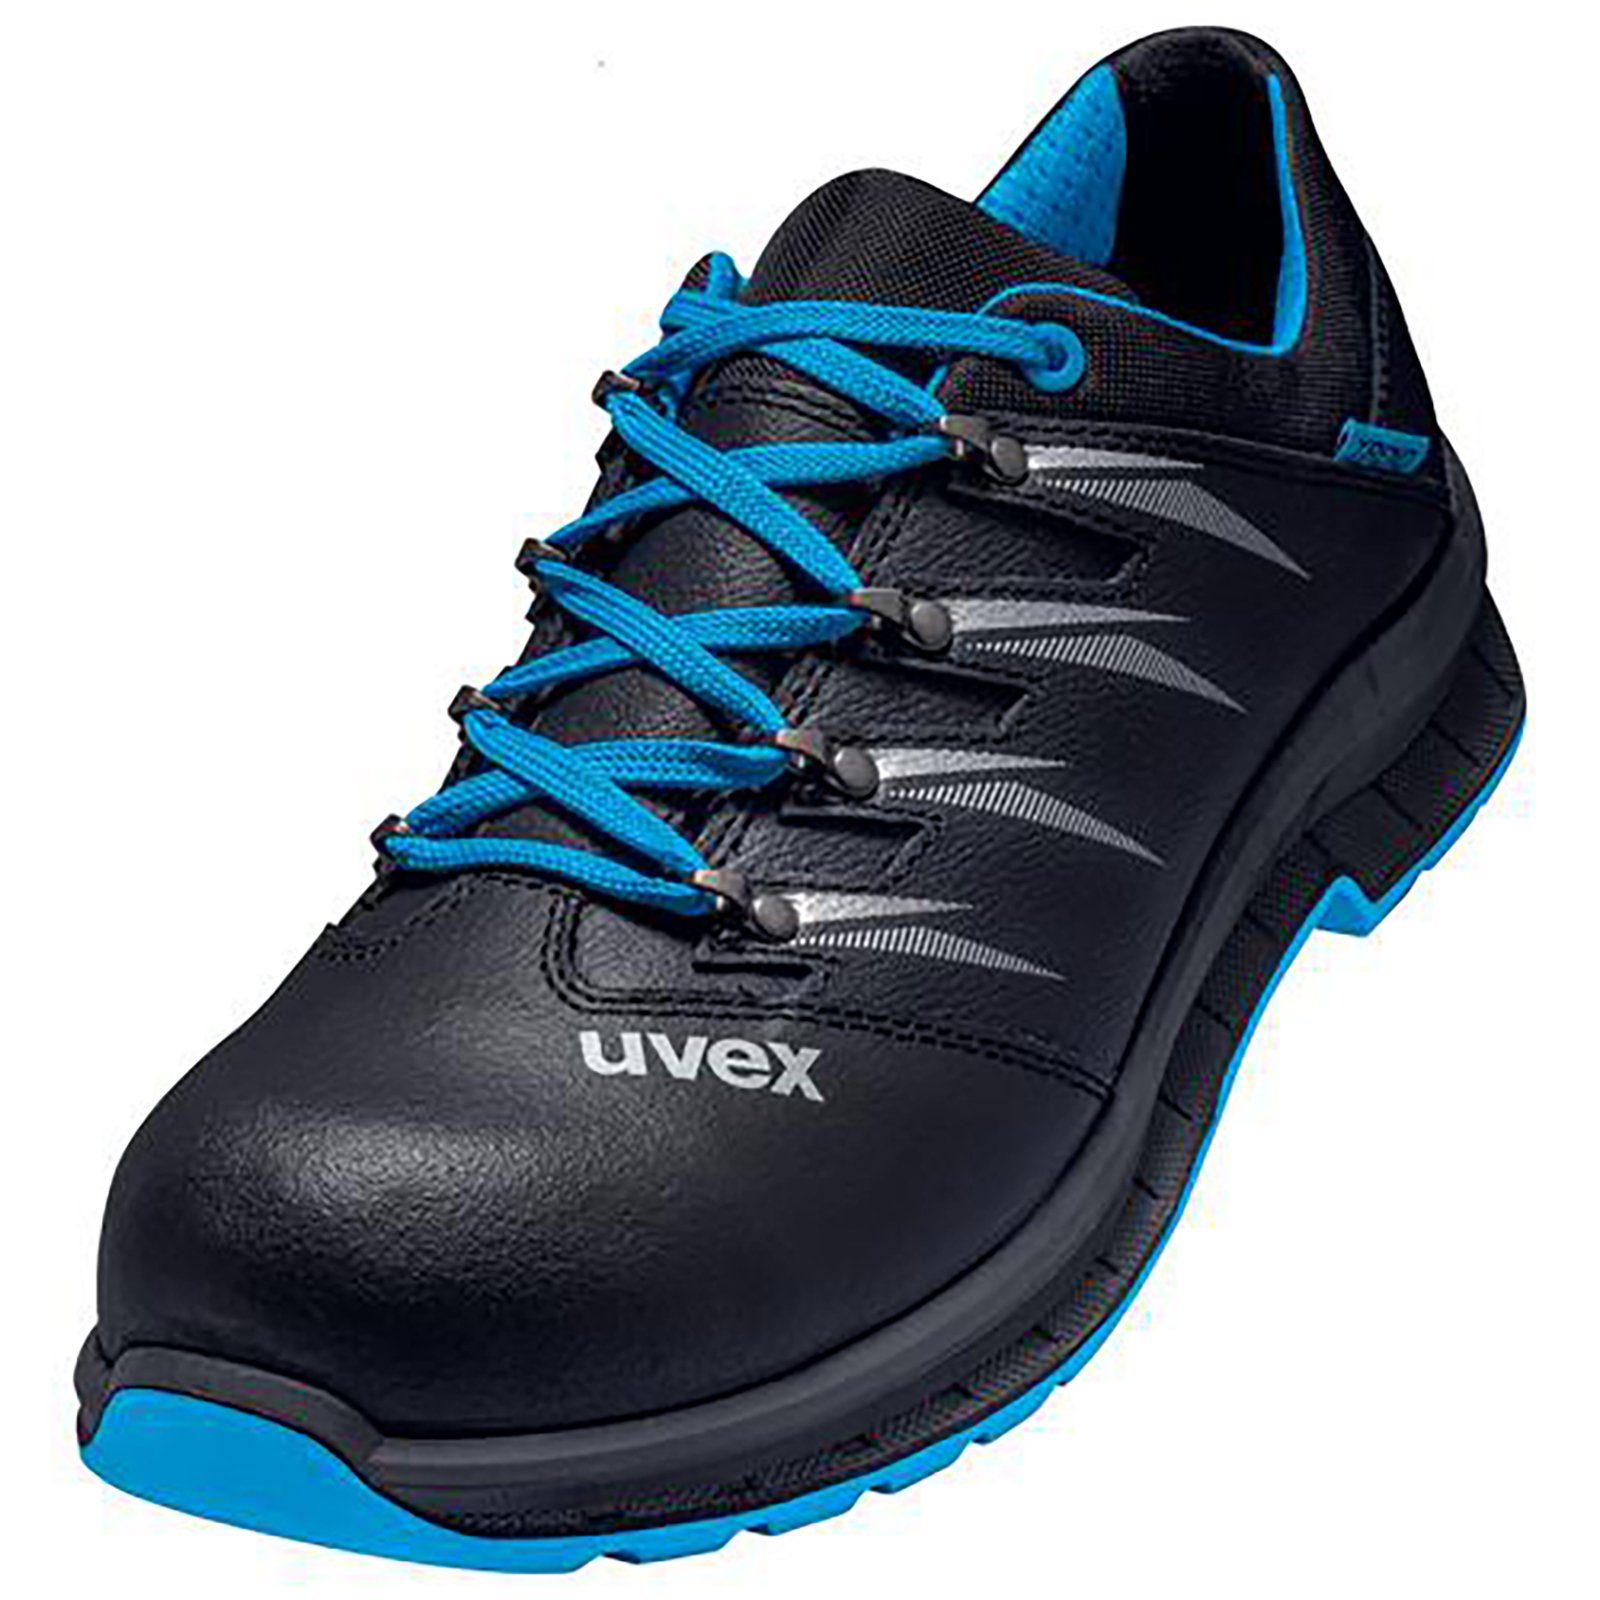 Uvex 2 trend Halbschuhe S2 blau, schwarz Weite 10 Sicherheitsschuh